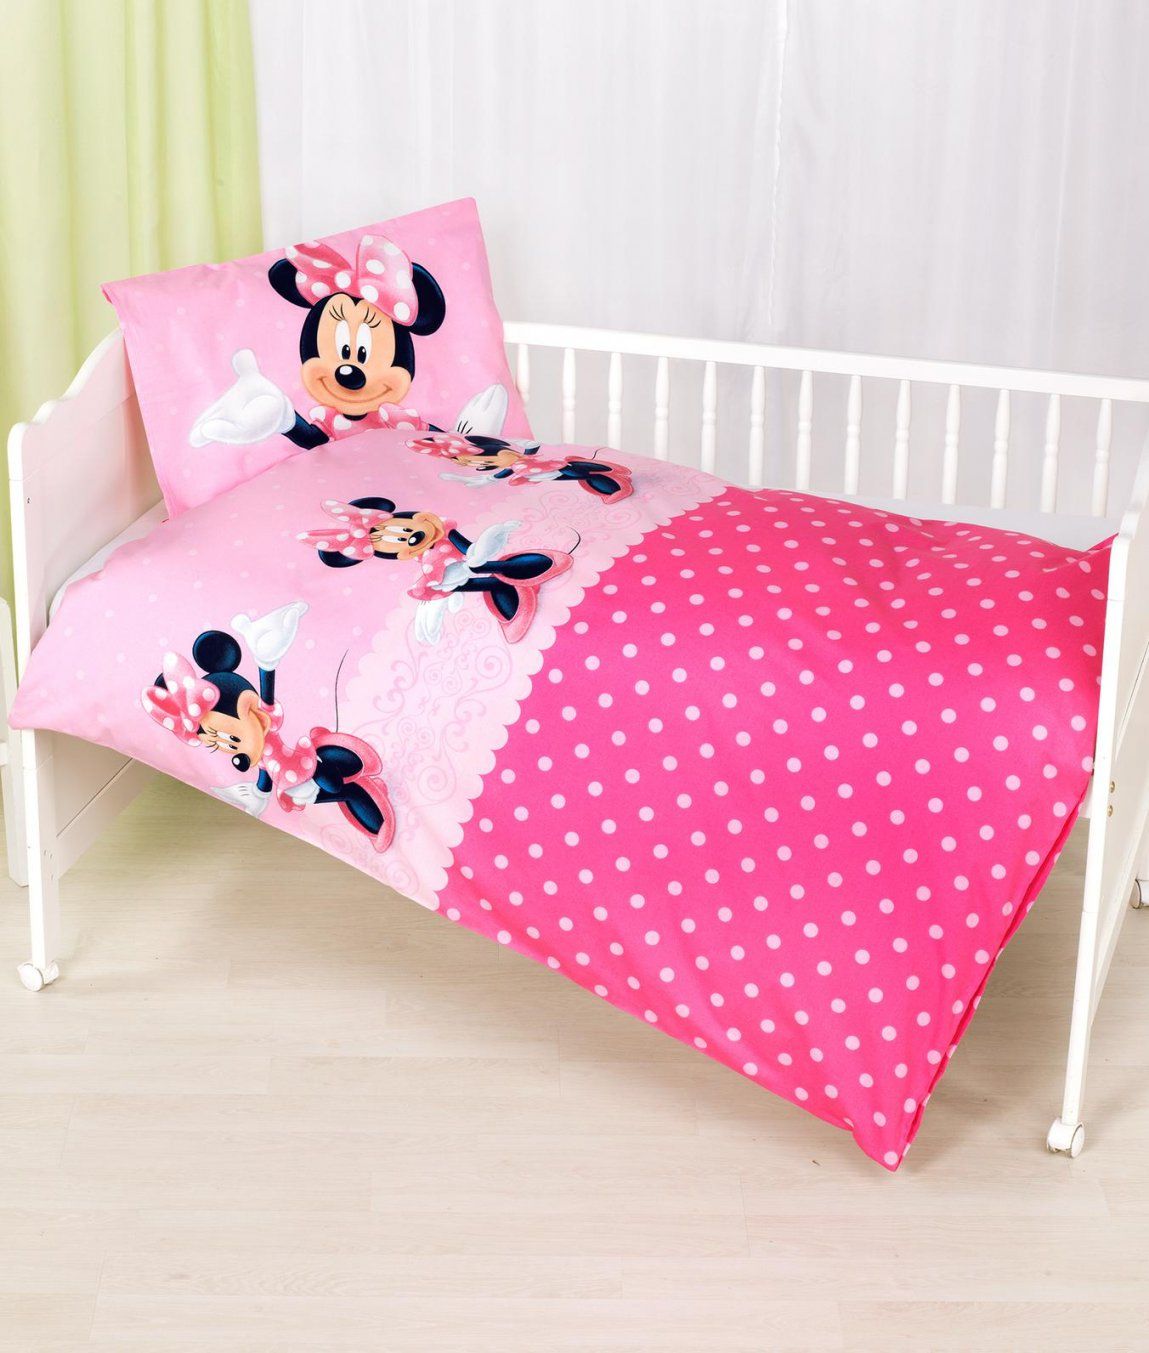 Babybettwäsche Garnitur Minnie Mouse Kaufen  Angela Bruderer von Bettwäsche Mini Maus Photo